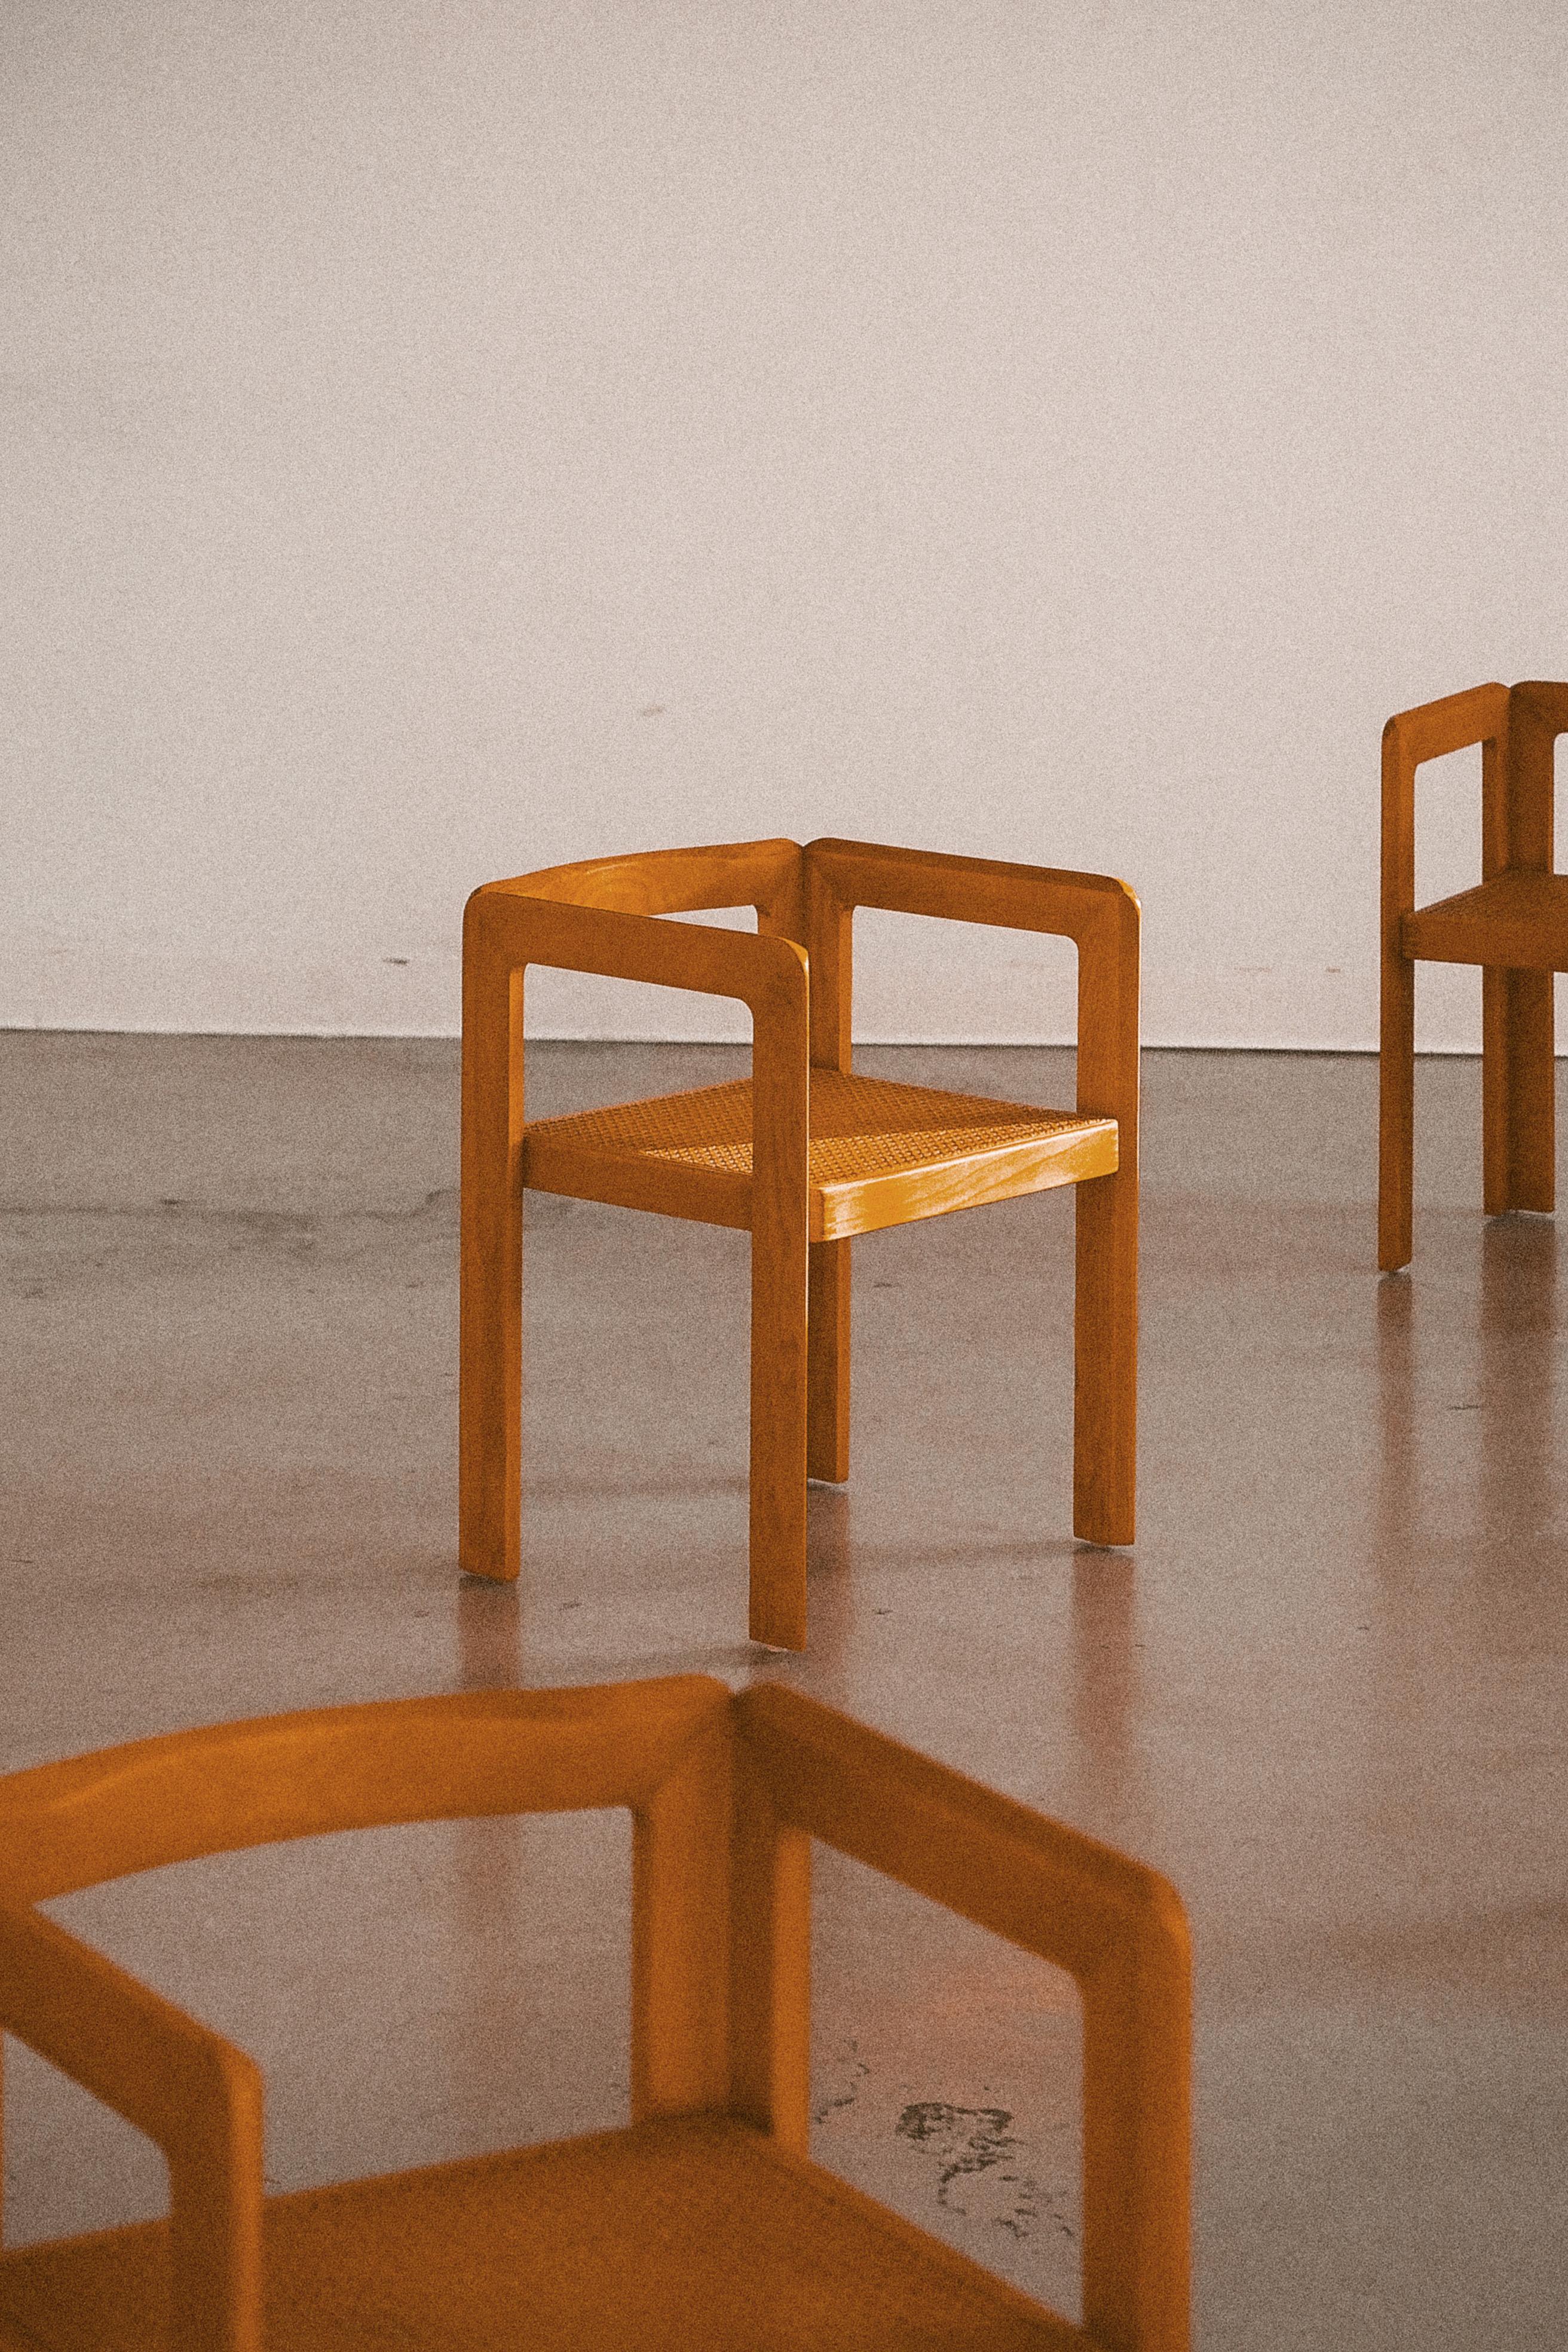 Production 1980-1990.

Excellent et rare exemple d'un grand ensemble de 10 chaises assorties du designer belge/néerlandais Derk Jan de Vries pour sa collection Fir, qui comprenait également des tiroirs, des armoires, un bureau et une table basse